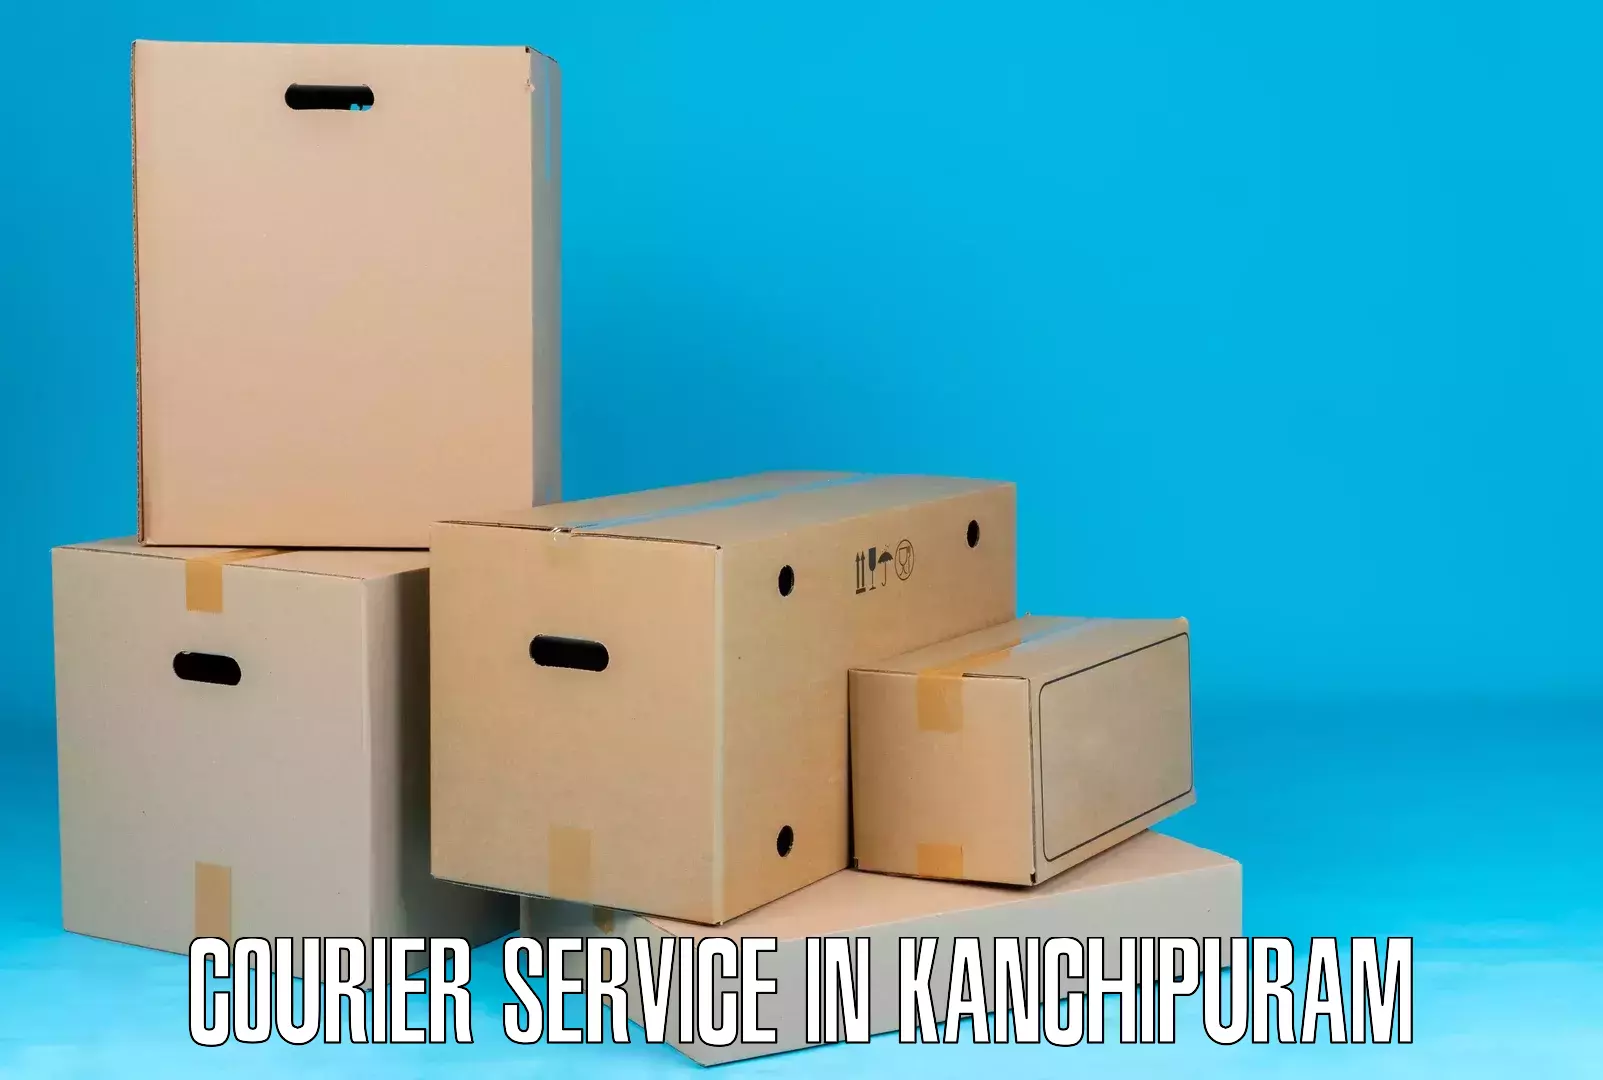 Efficient cargo handling in Kanchipuram